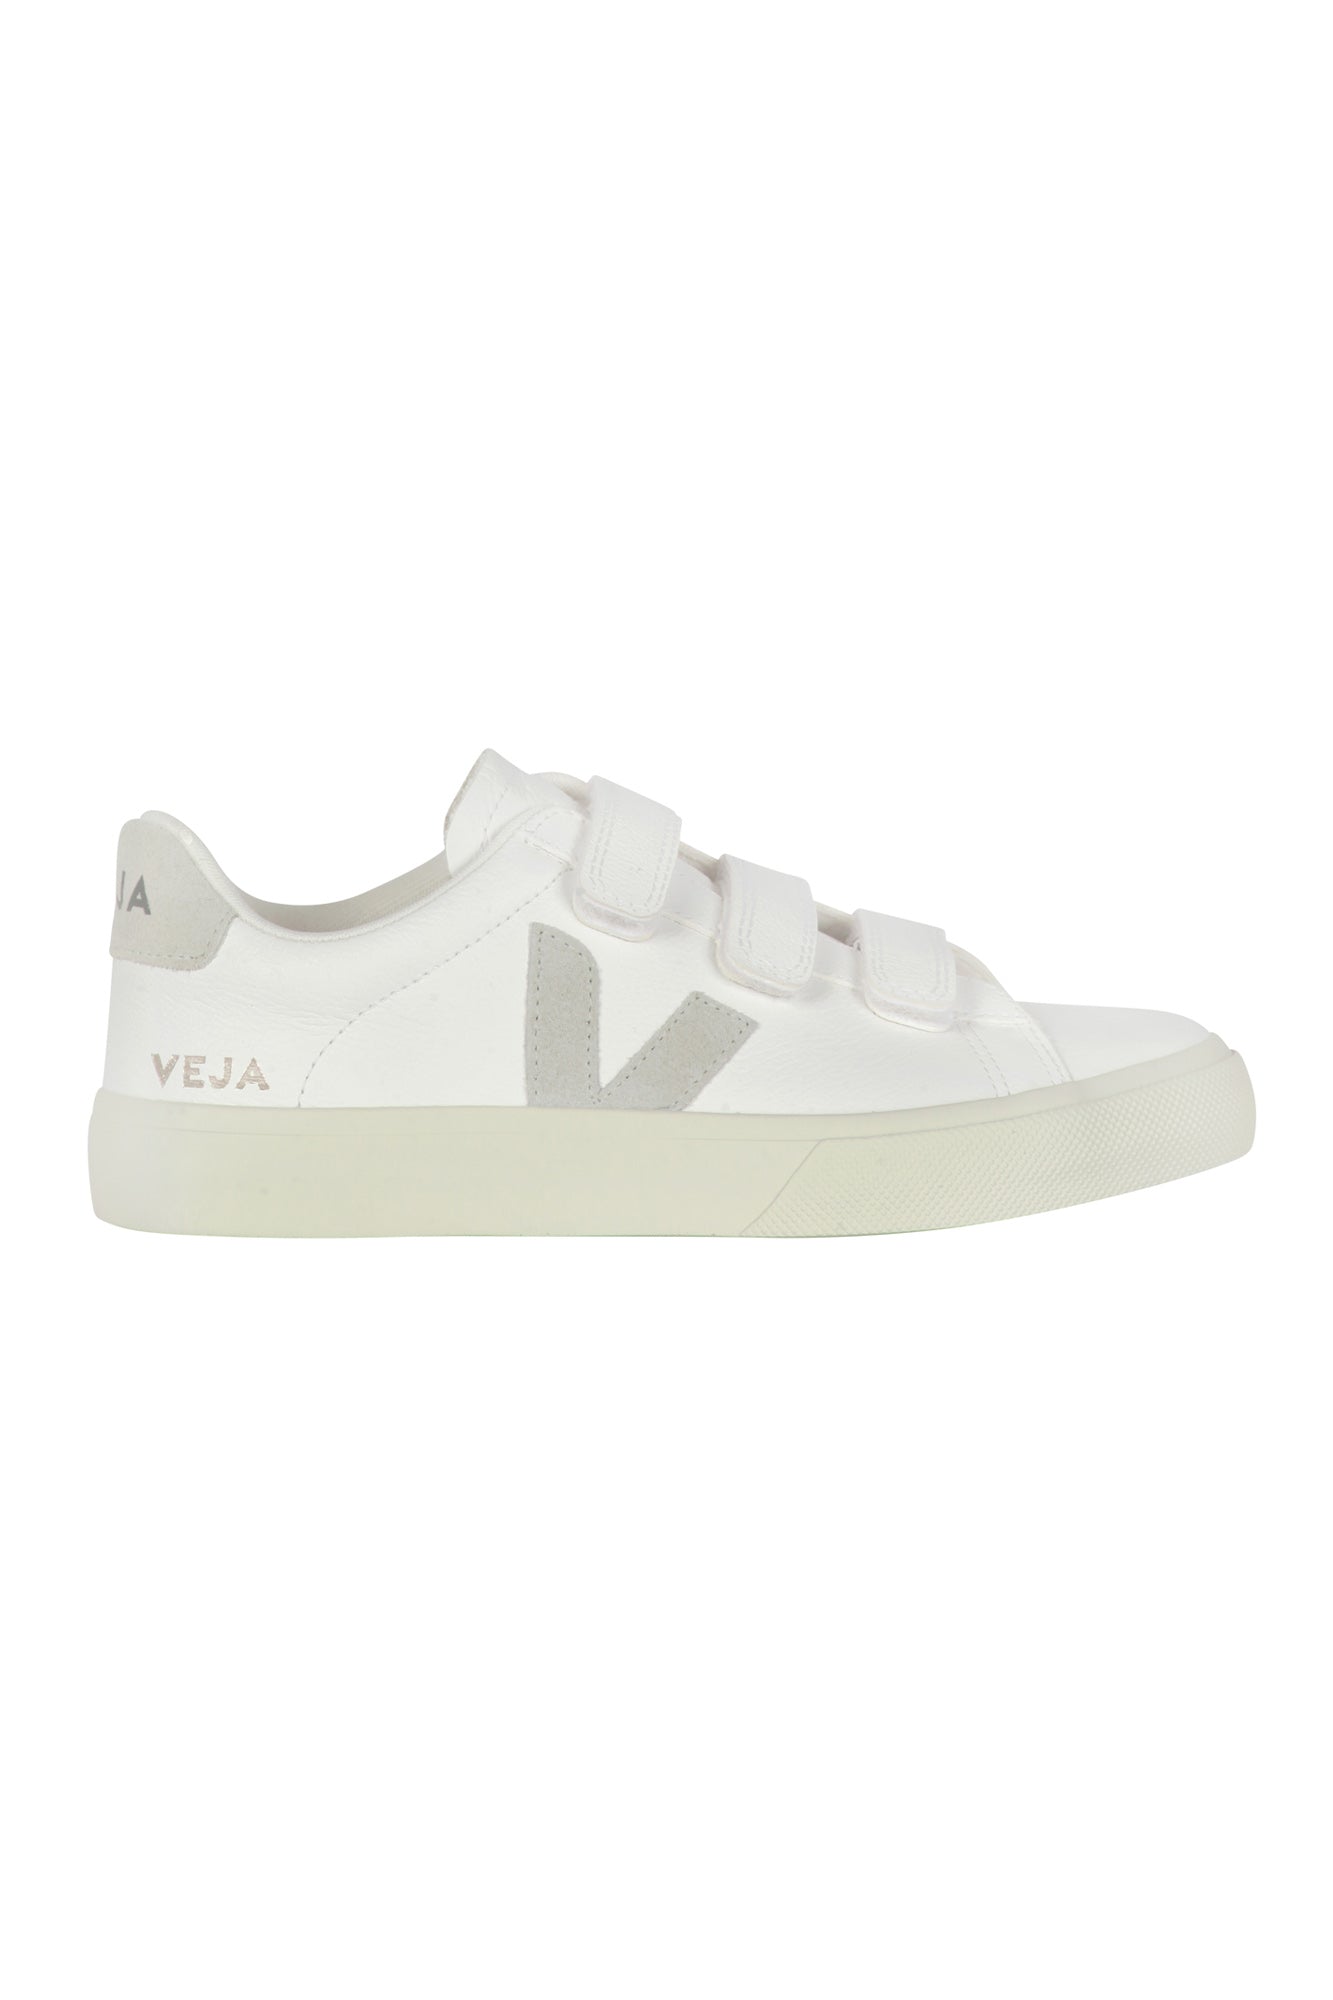 Veja - Sneakers - 430607 - Bianco/Naturale